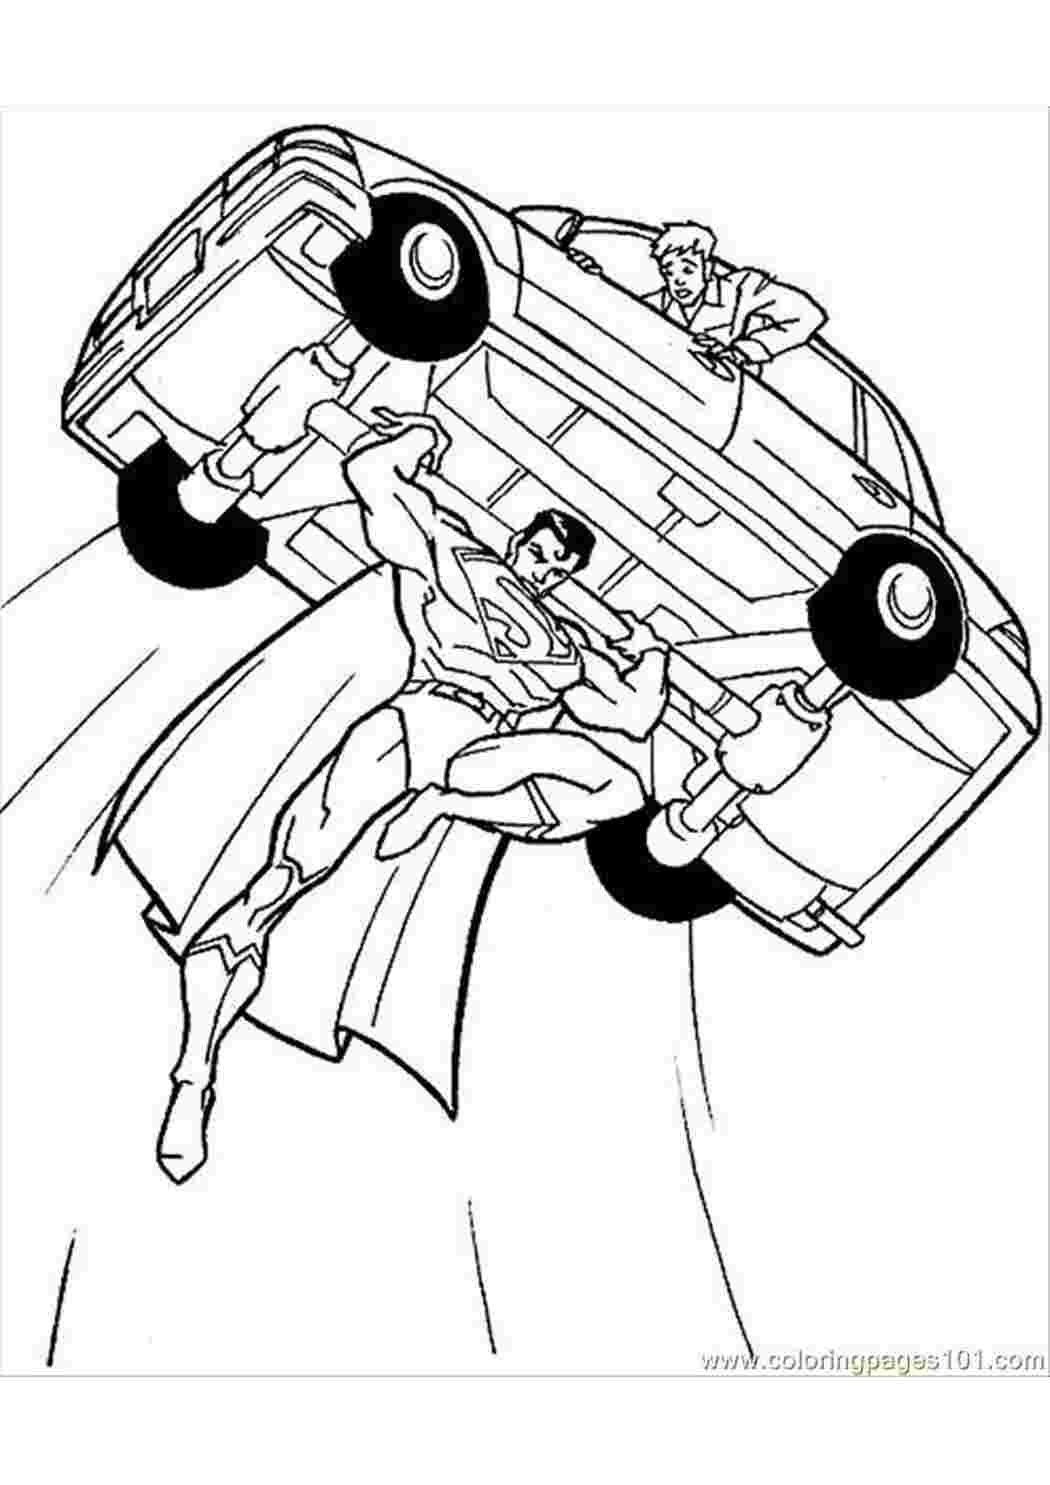 Раскраски картинки на рабочий стол онлайн Супергерои, супермен поднял машину в воздух Распечатать раскраски для мальчиков